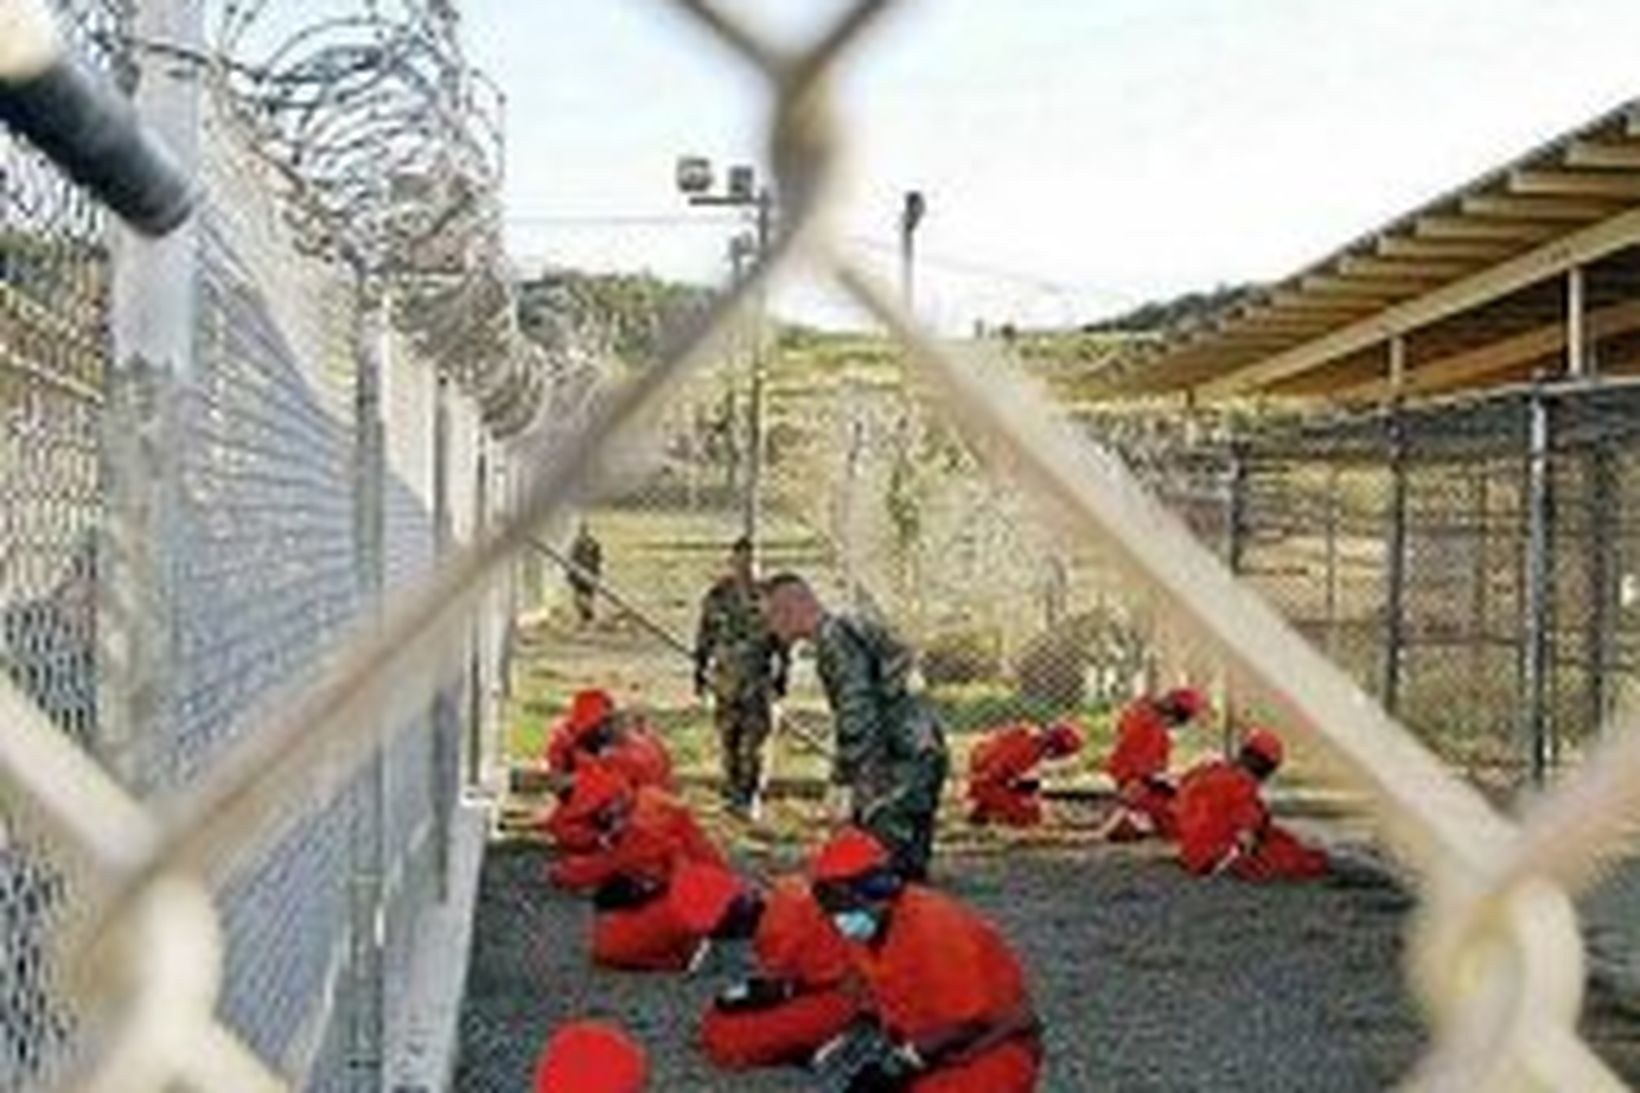 Handtaka fimm Alsírbúar sem verið hafa í Guantanamo frá 2001 …